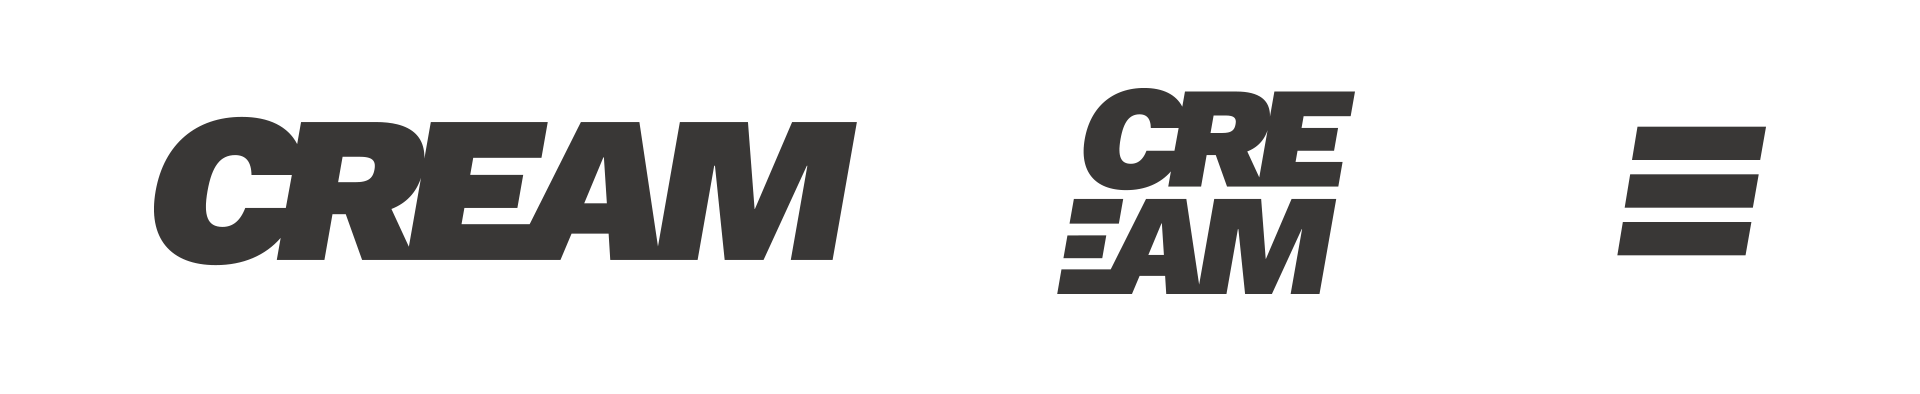 CREAM New logo 2017 Symbol